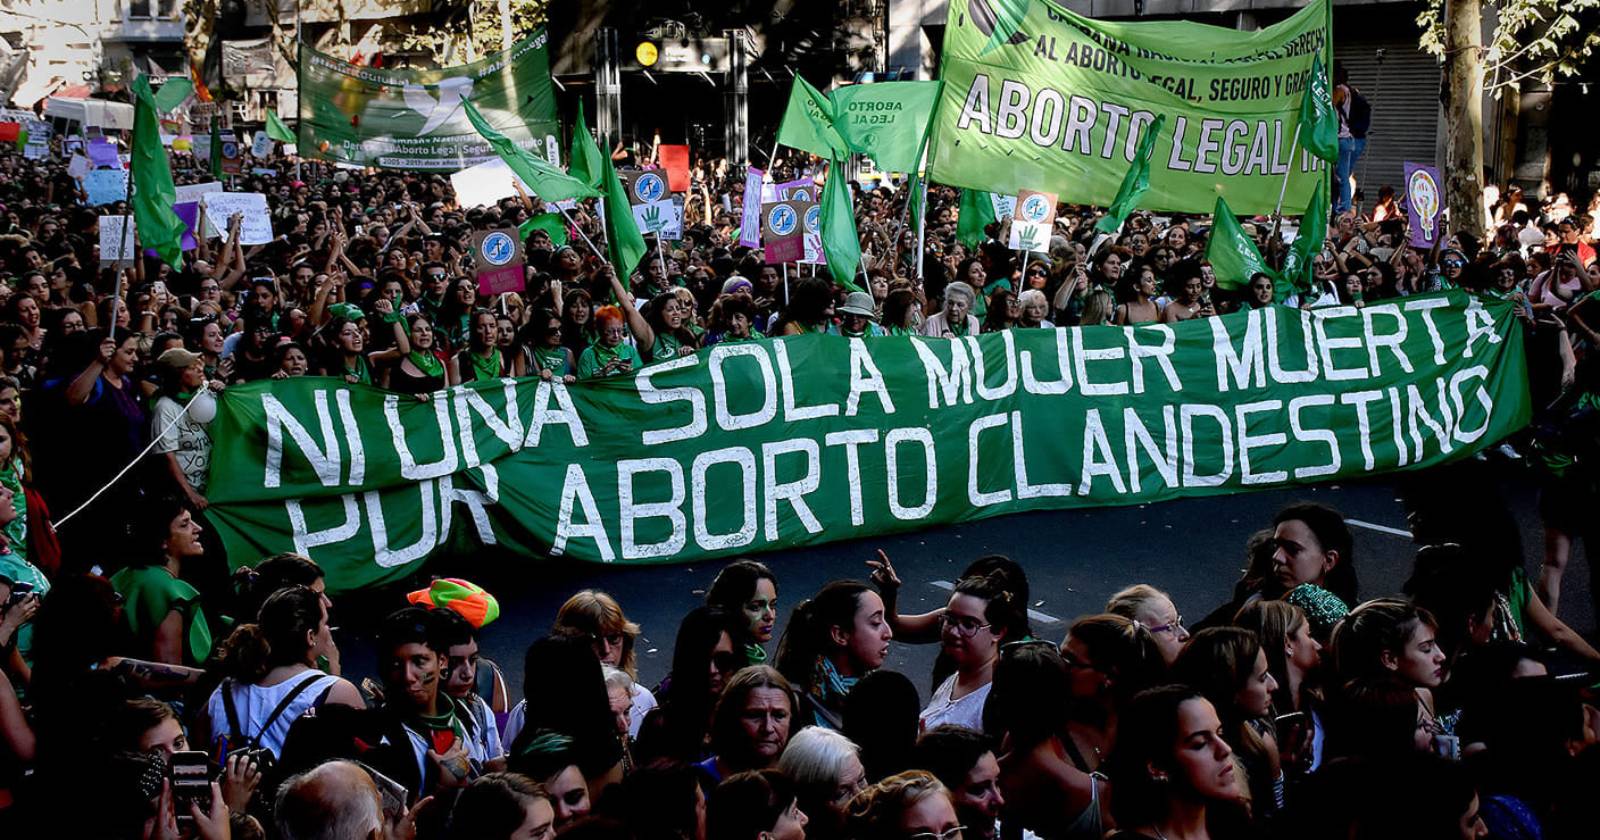 aborto legal Argentina